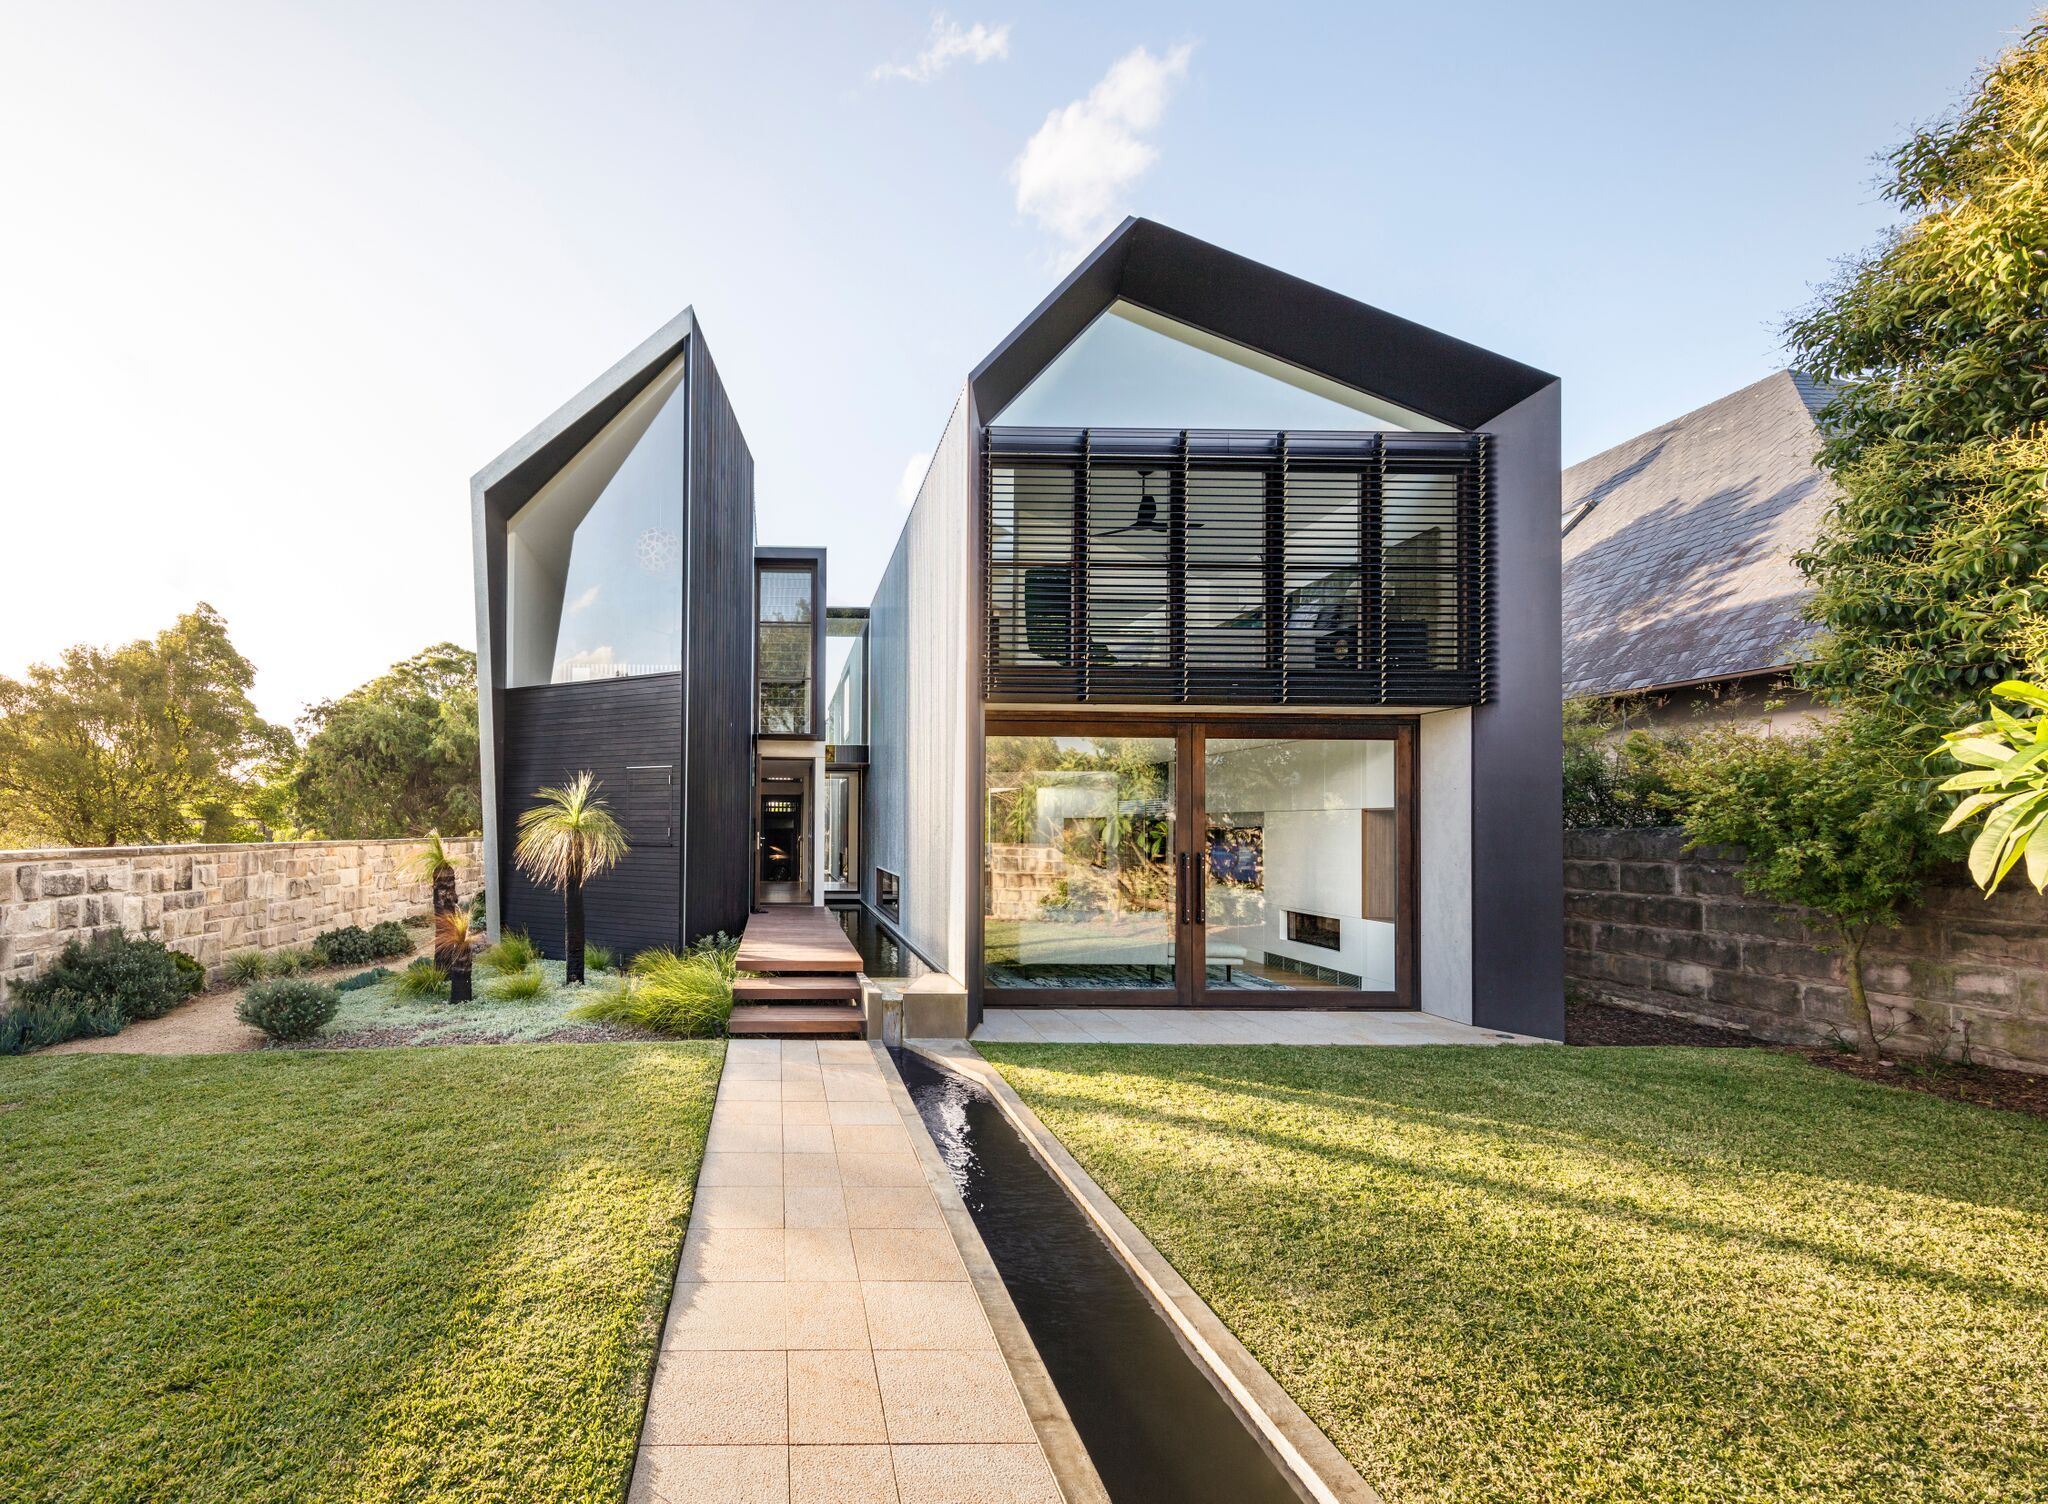 Diseño de casas australianas originales - Casa moderna con estructura  metálica